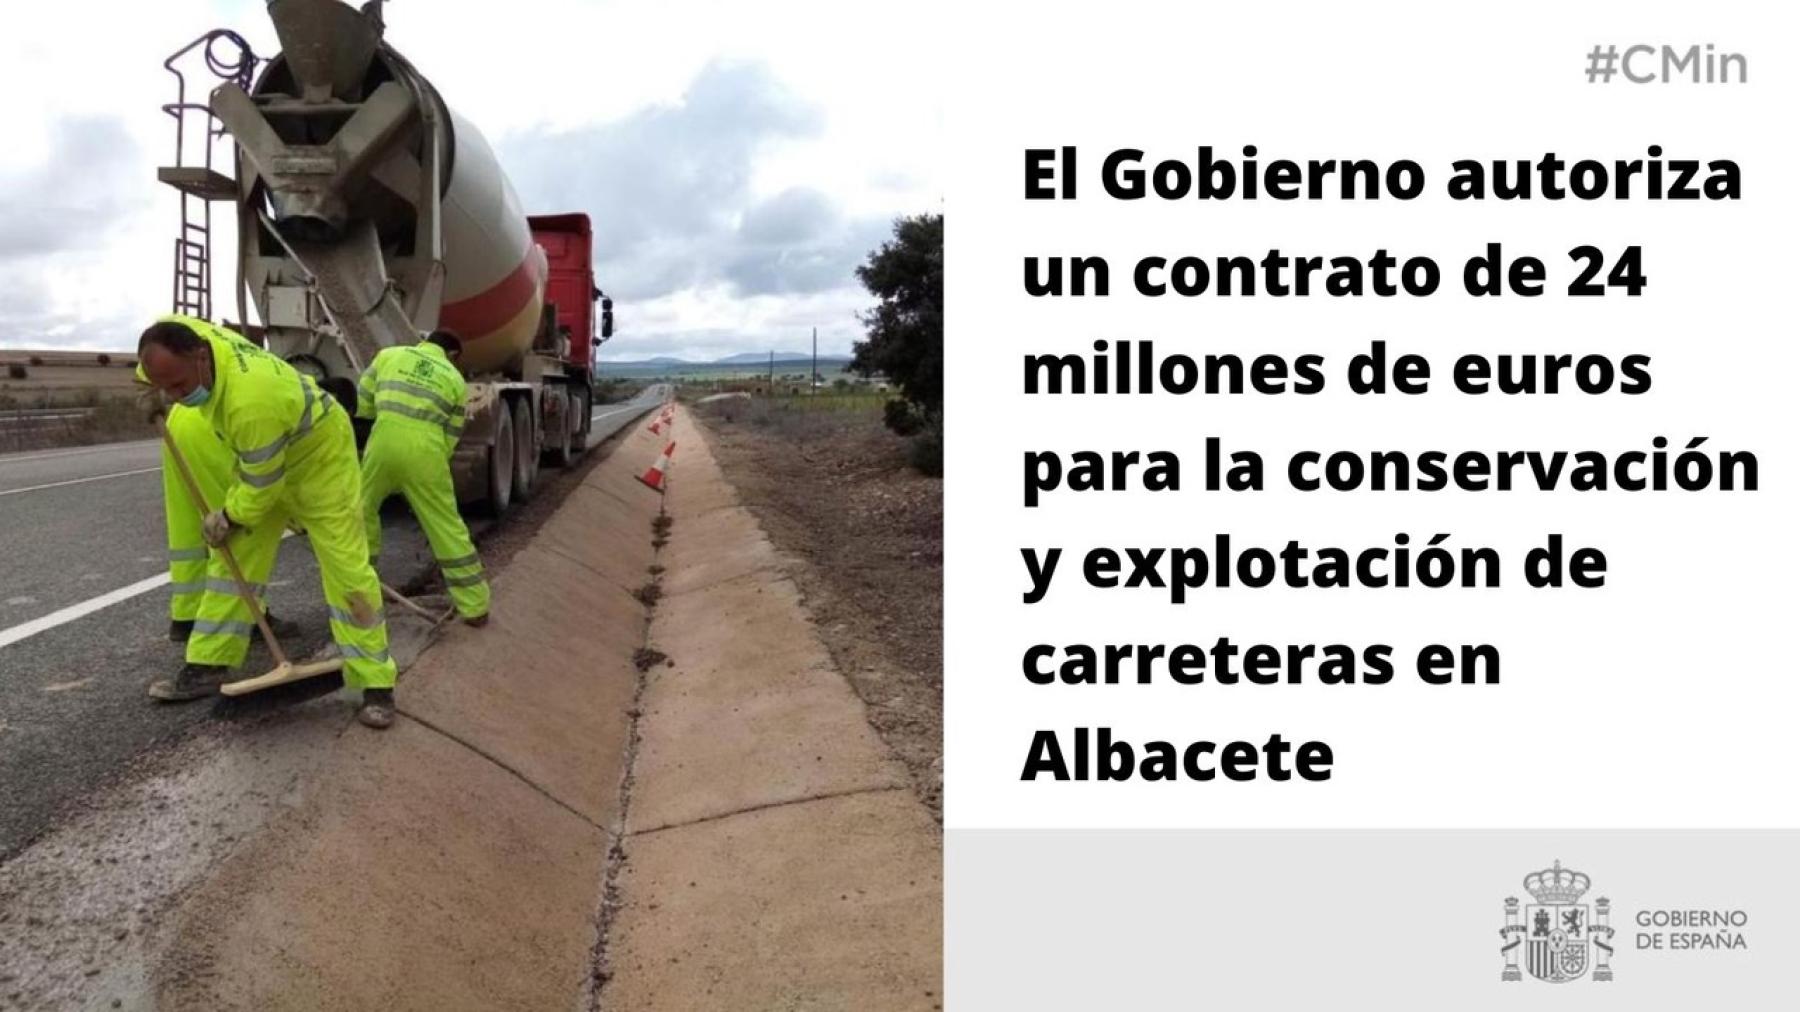 El Gobierno autoriza un contrato de 24 millones de euros para la conservación y explotación de carreteras en Albacete